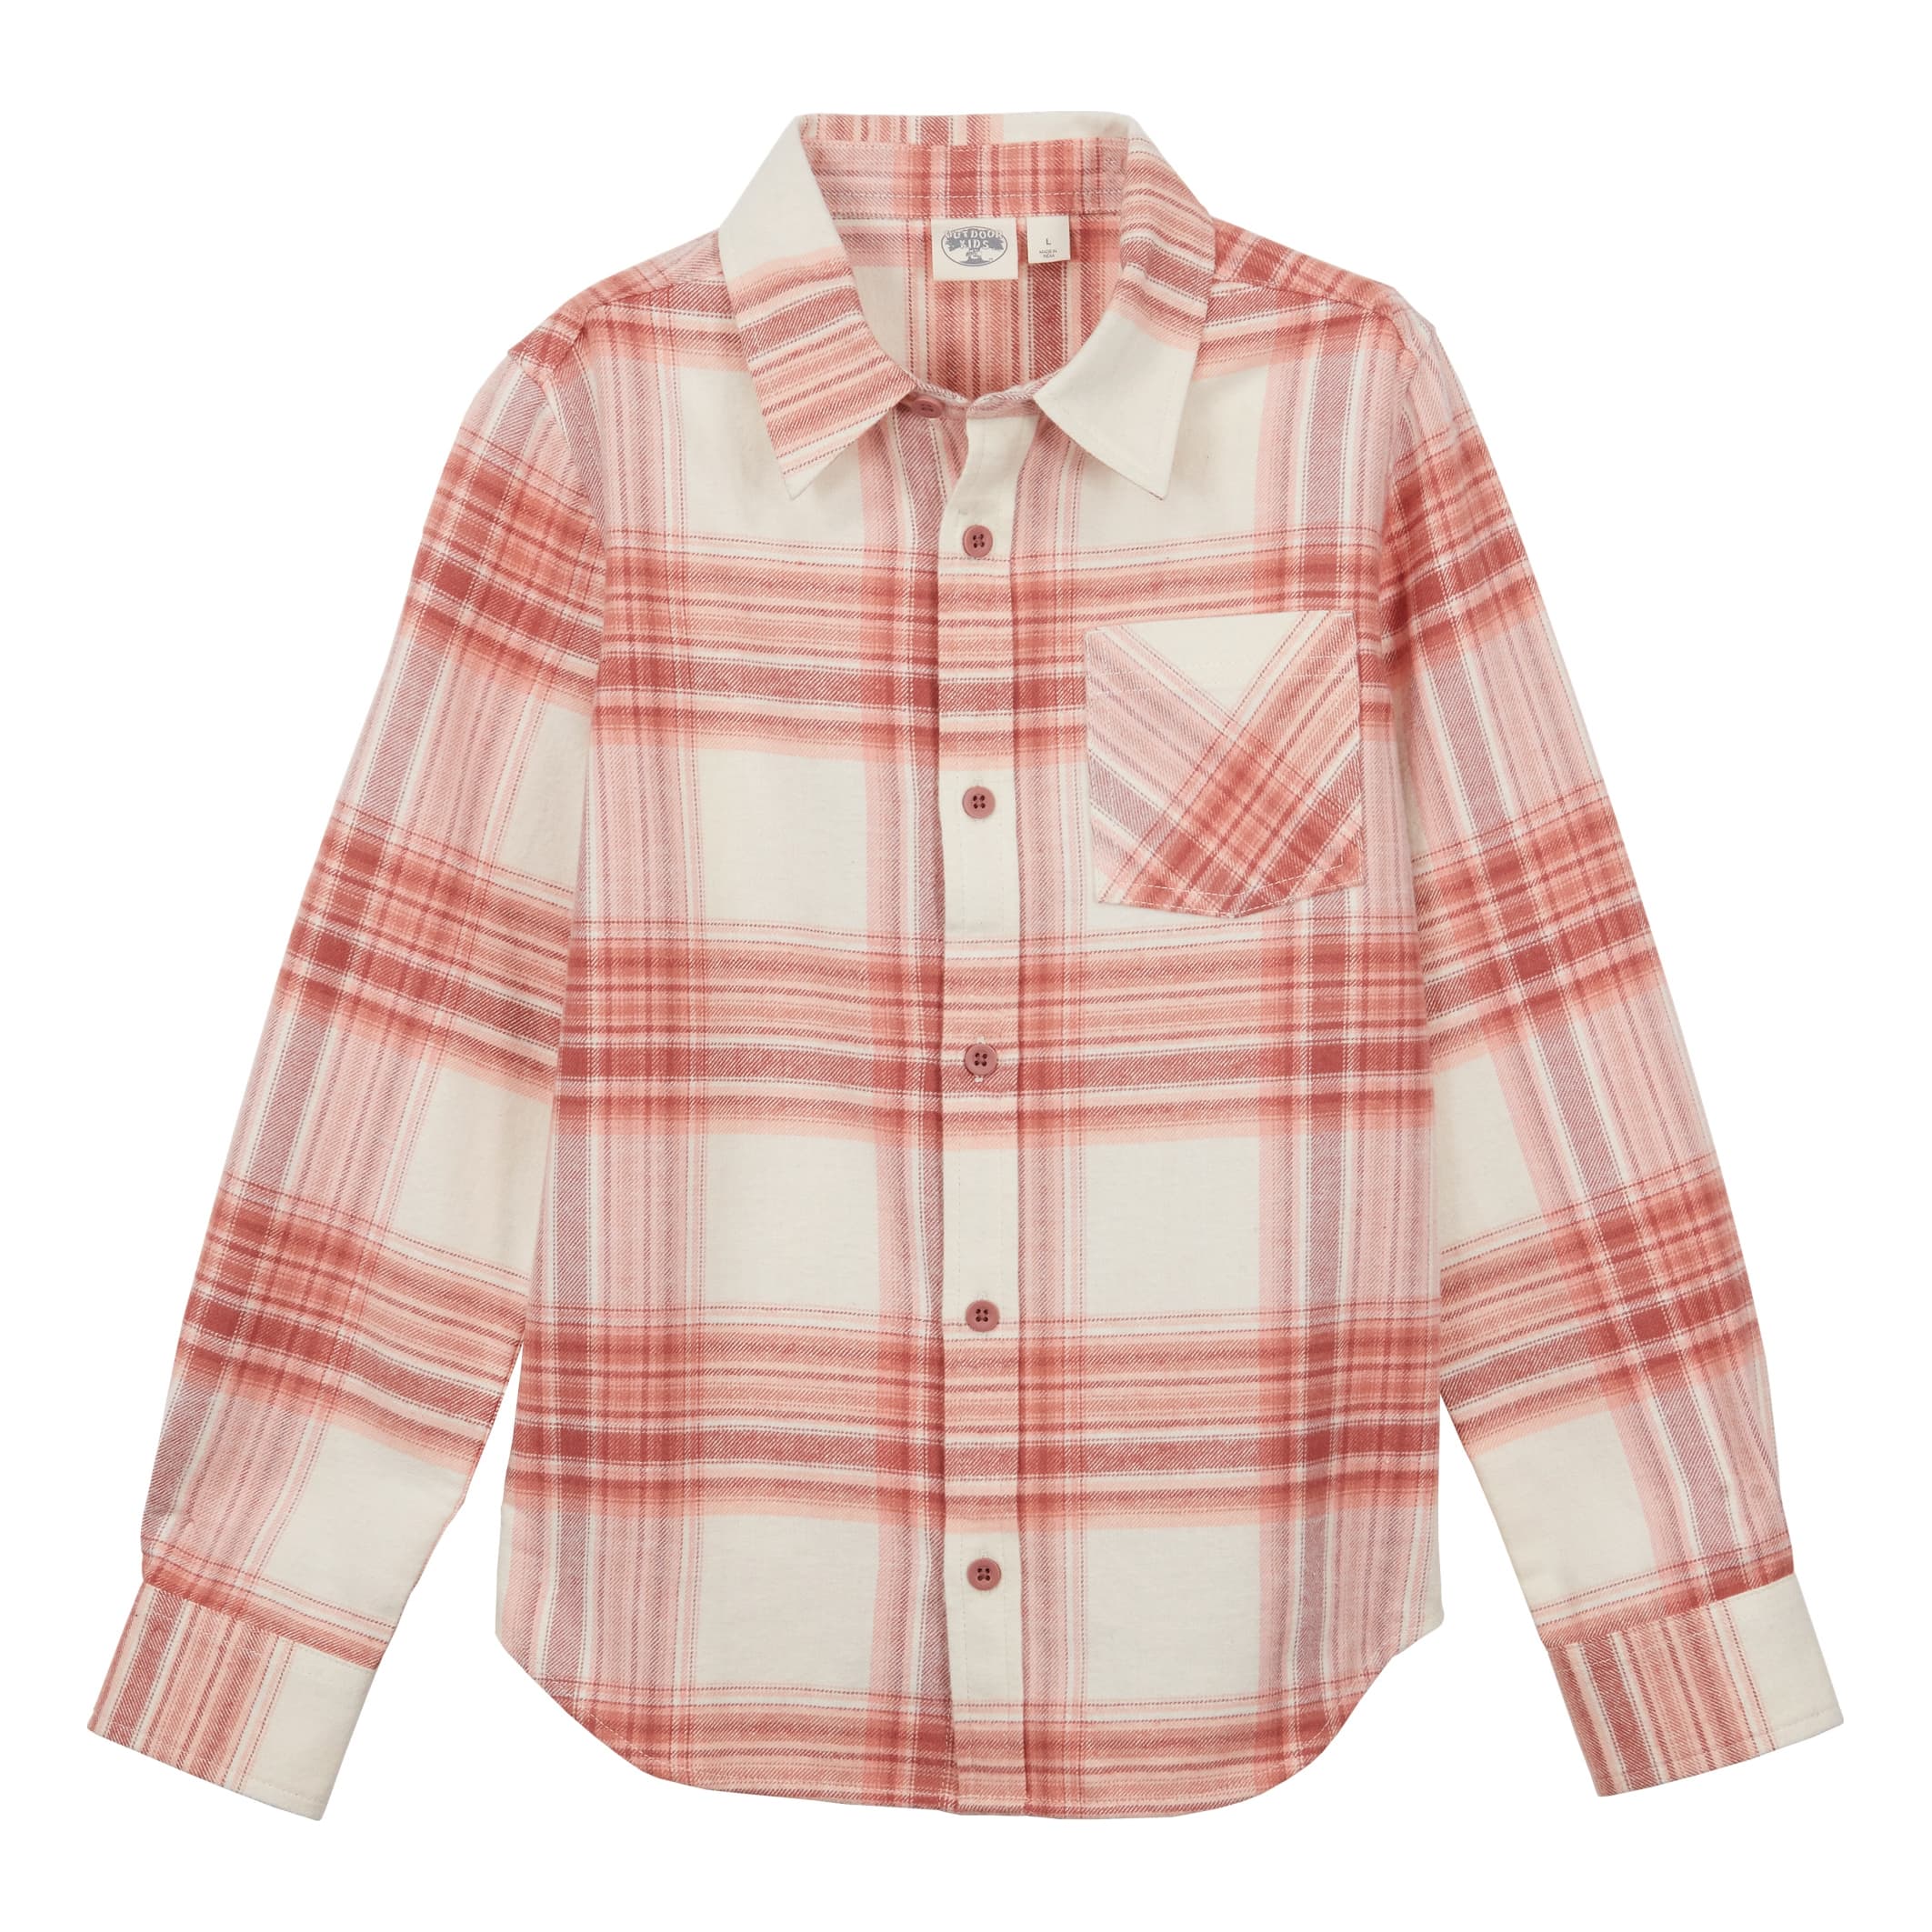 Bass Pro Shops® Girls’ Long-Sleeve Flannel Button-Down Shirt - Cream Pink